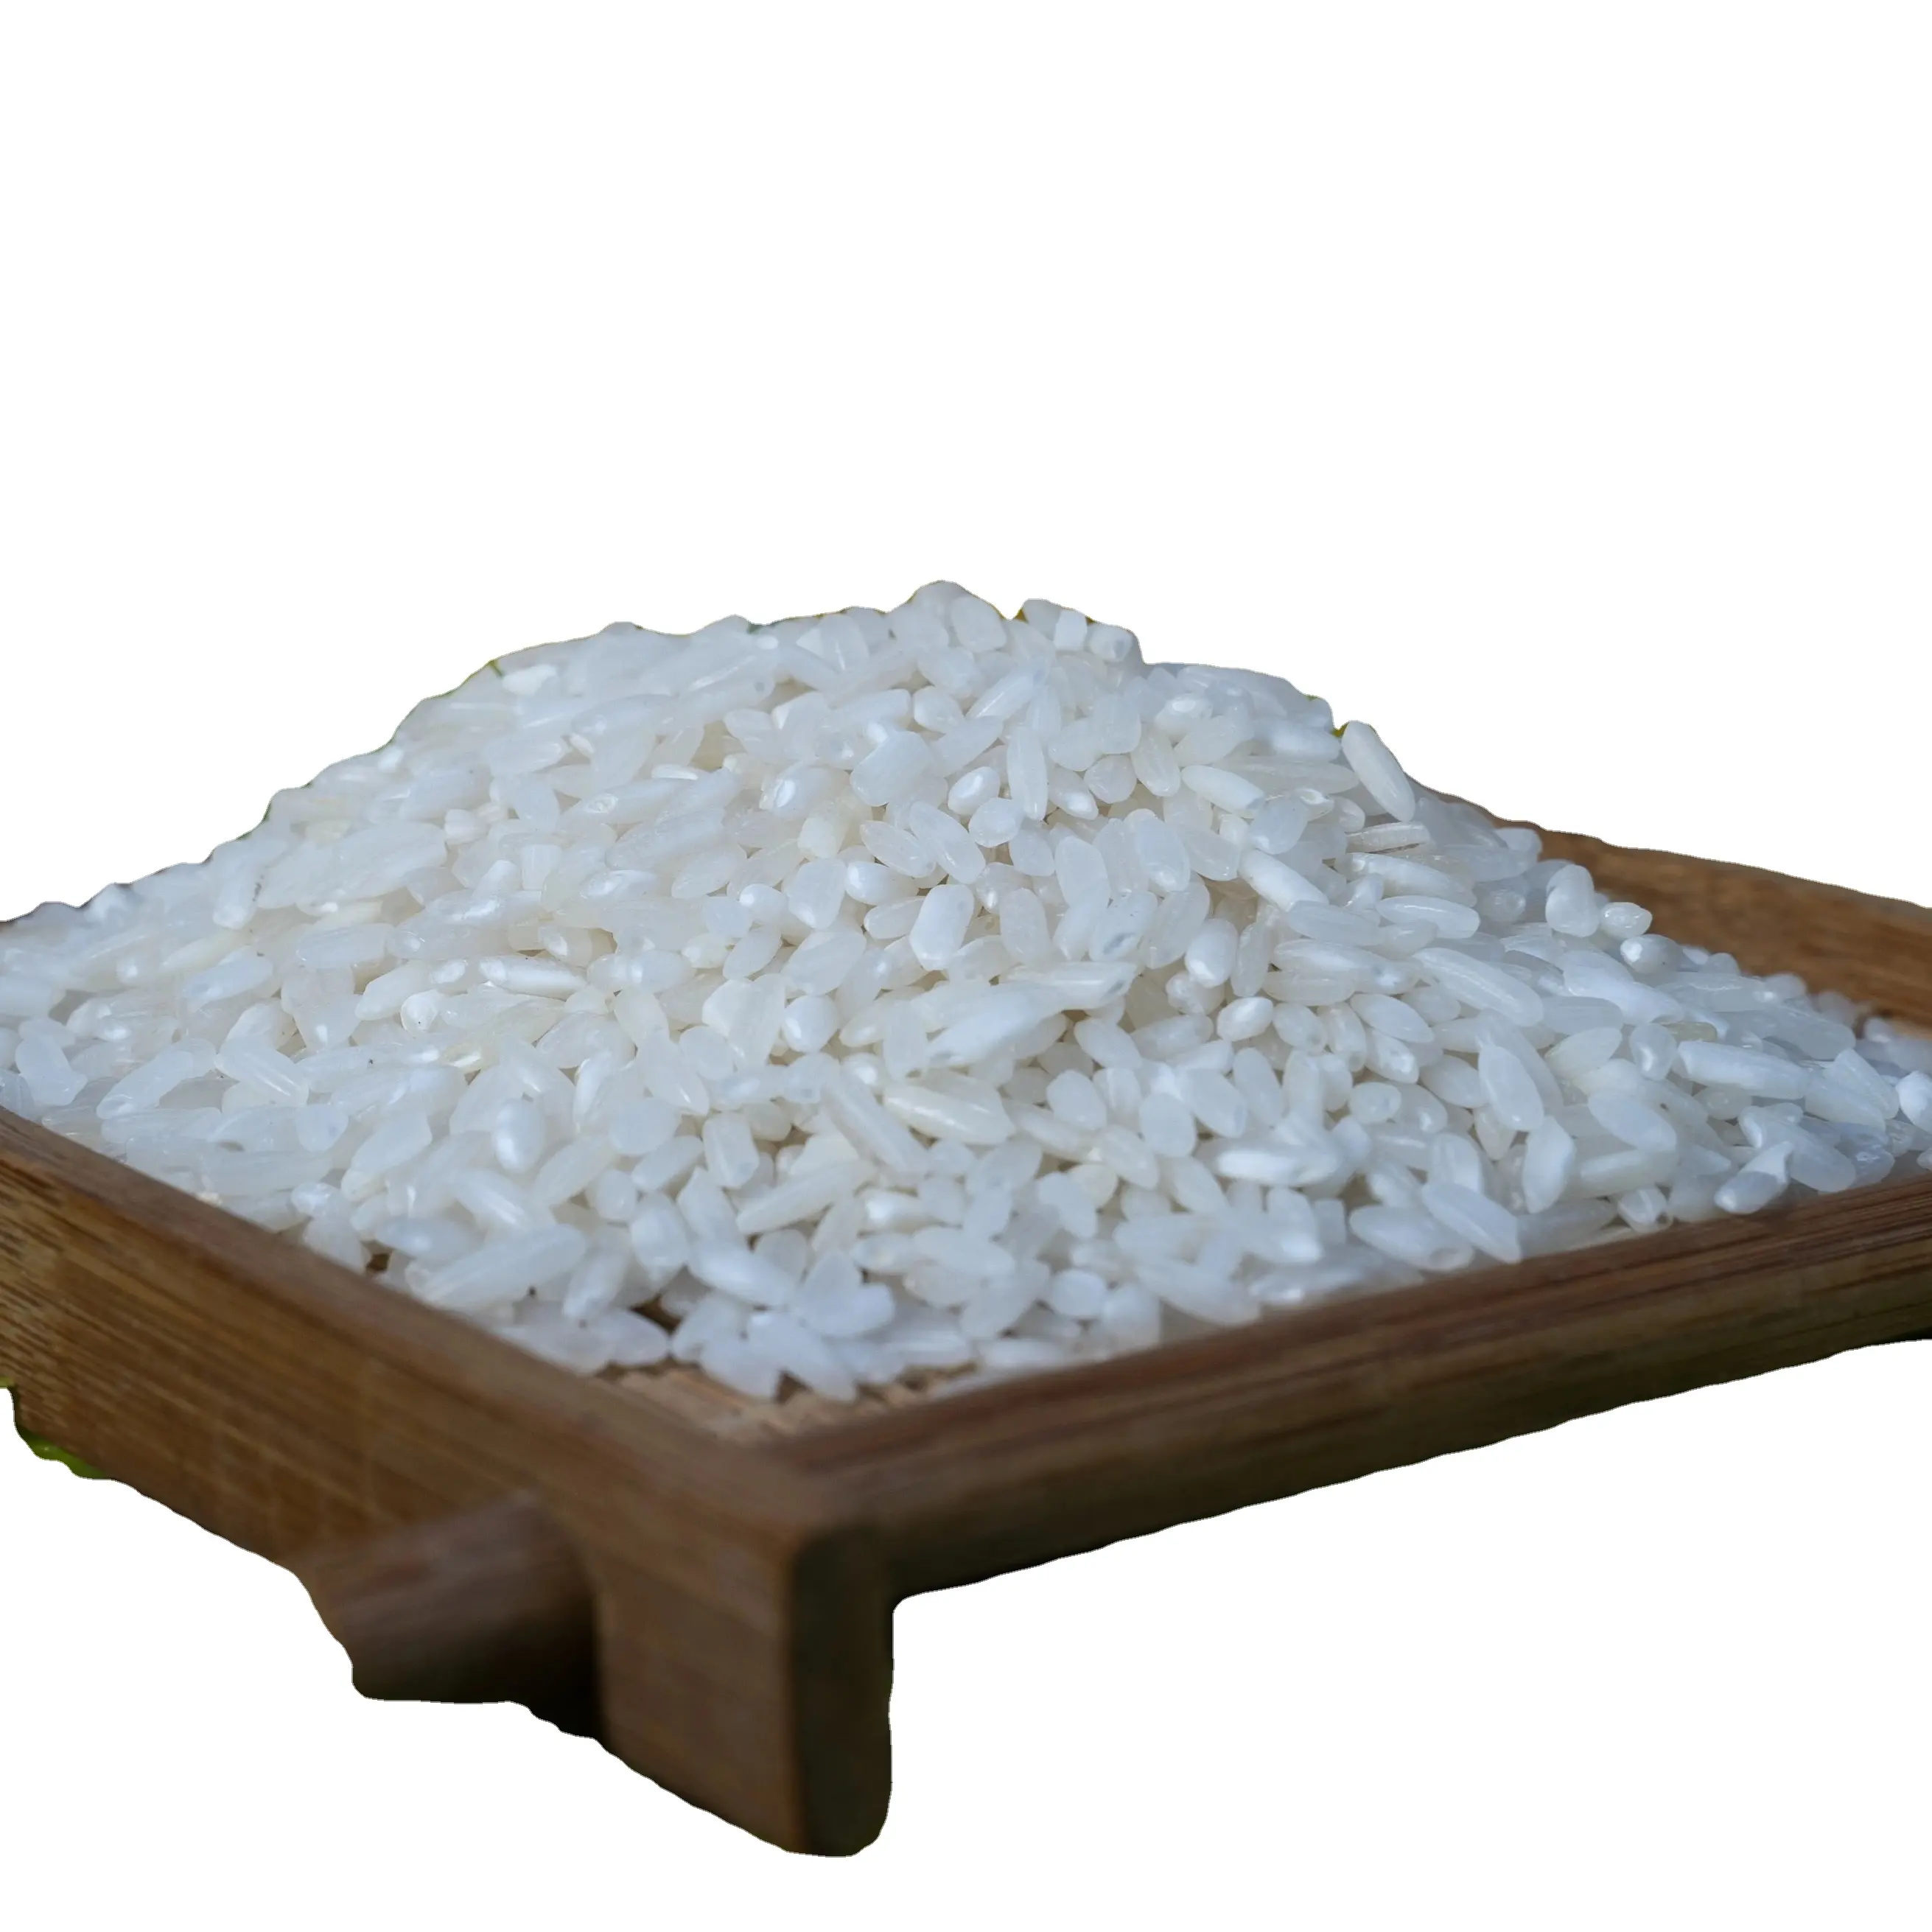 프리미엄 베트남 긴 곡물 흰 쌀-깨진 5%: 새로운 작물, 단단한 질감, 24 개월 유통기한이 있는 베스트 셀러, 베트남 쌀